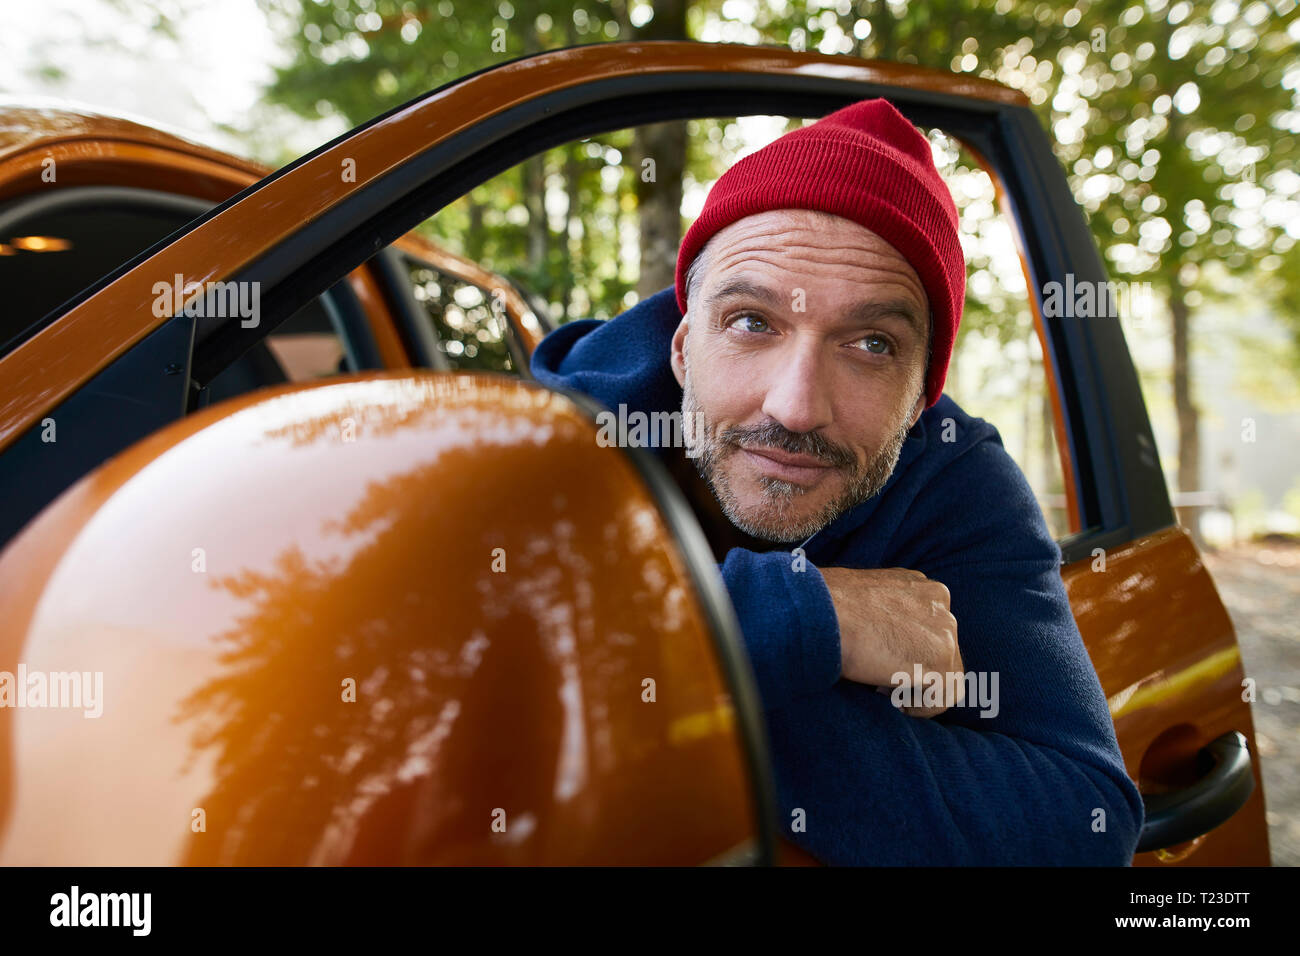 Retrato del hombre maduro barbado vistiendo gorra roja de asomarse a la ventana de Abrir puerta del automóvil Foto de stock